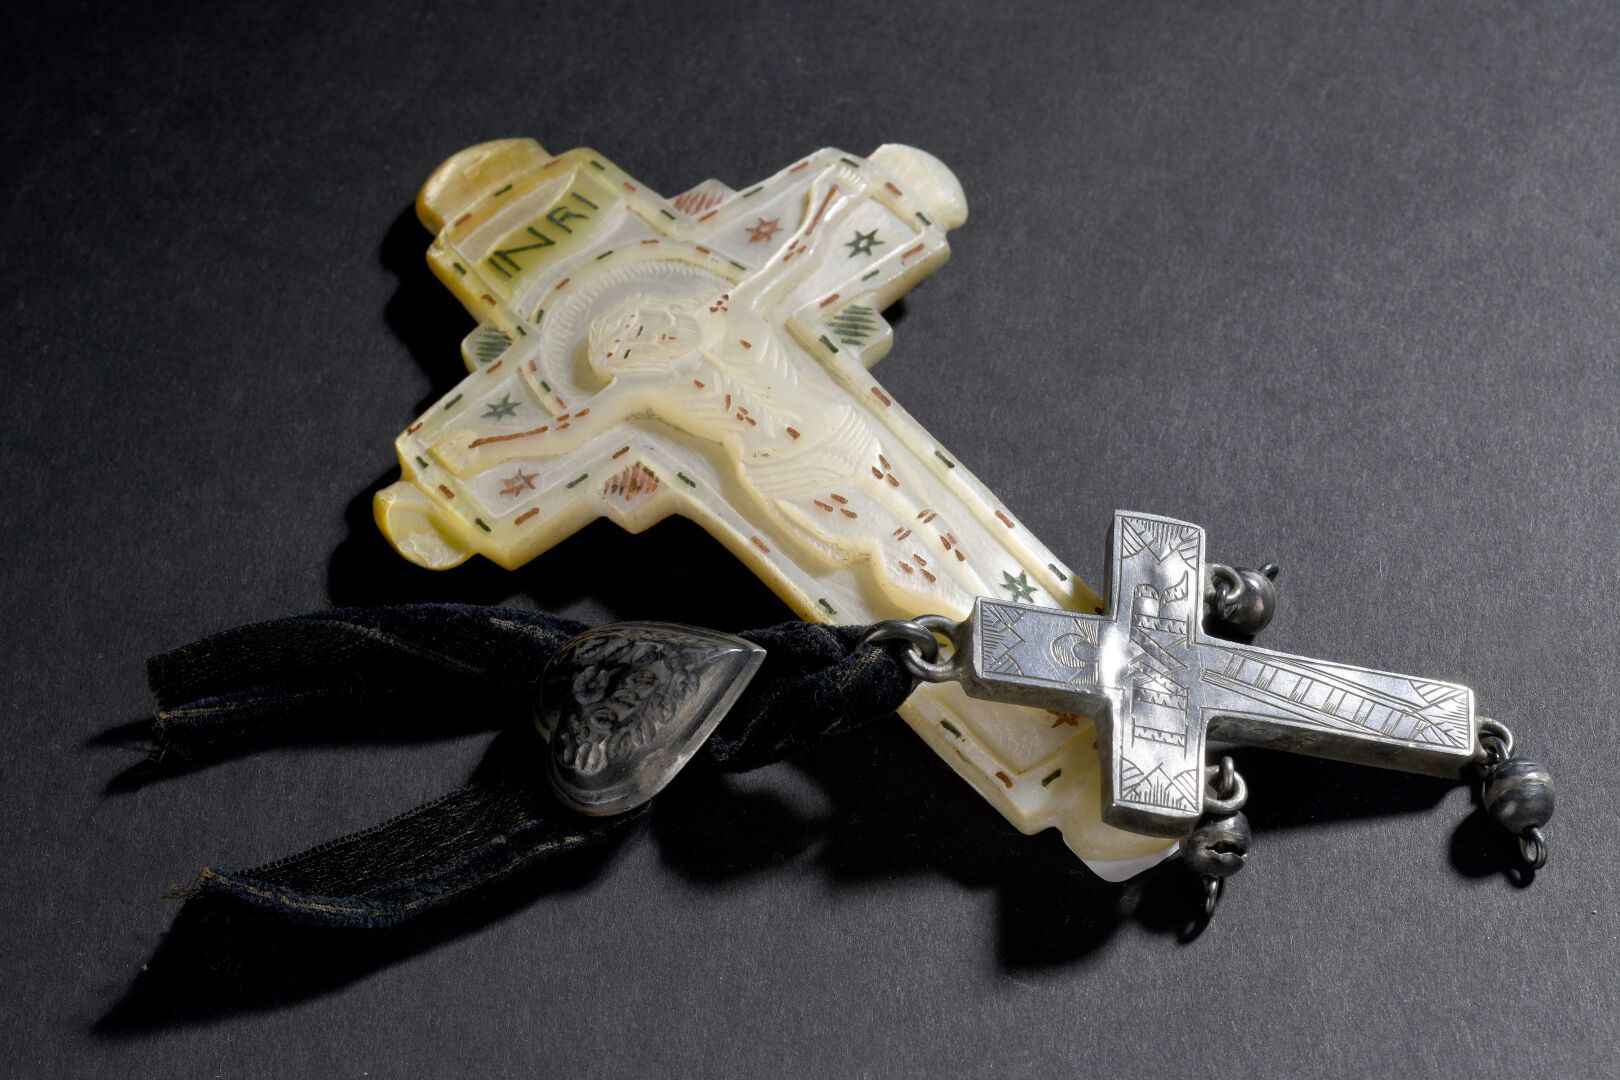 Null 珍珠母雕刻的十字架，圣地的纪念品，19世纪
H.13厘米 
一个银色的十字架和一条带有银色心形的丝带被挂在上面。高6厘米